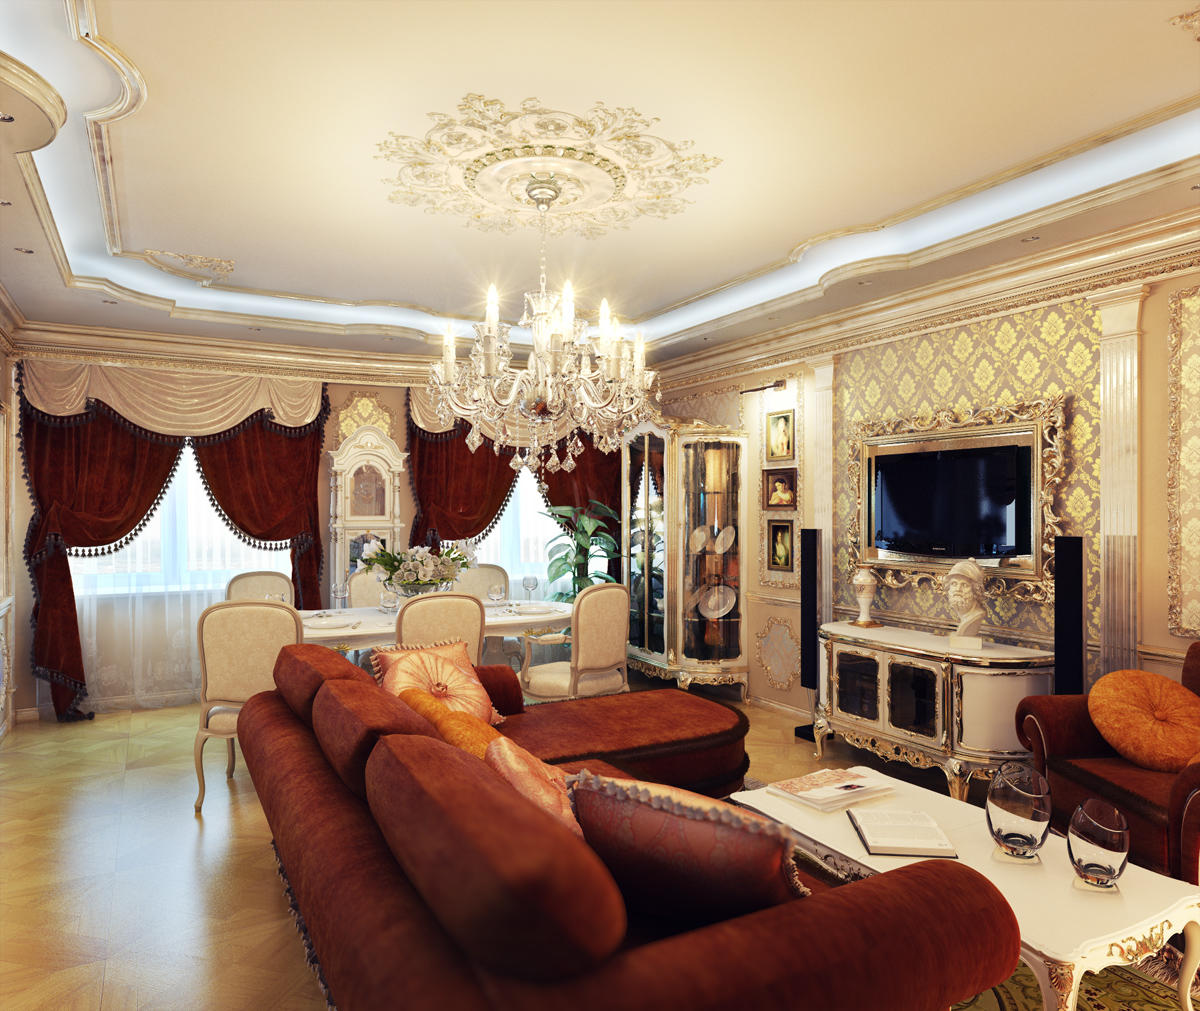 חדרי מגורים בסגנון קלאסי עשויים בסגנון לבן או בז ', ומשלימים את הפנים עם ריהוט בצבעים בהירים